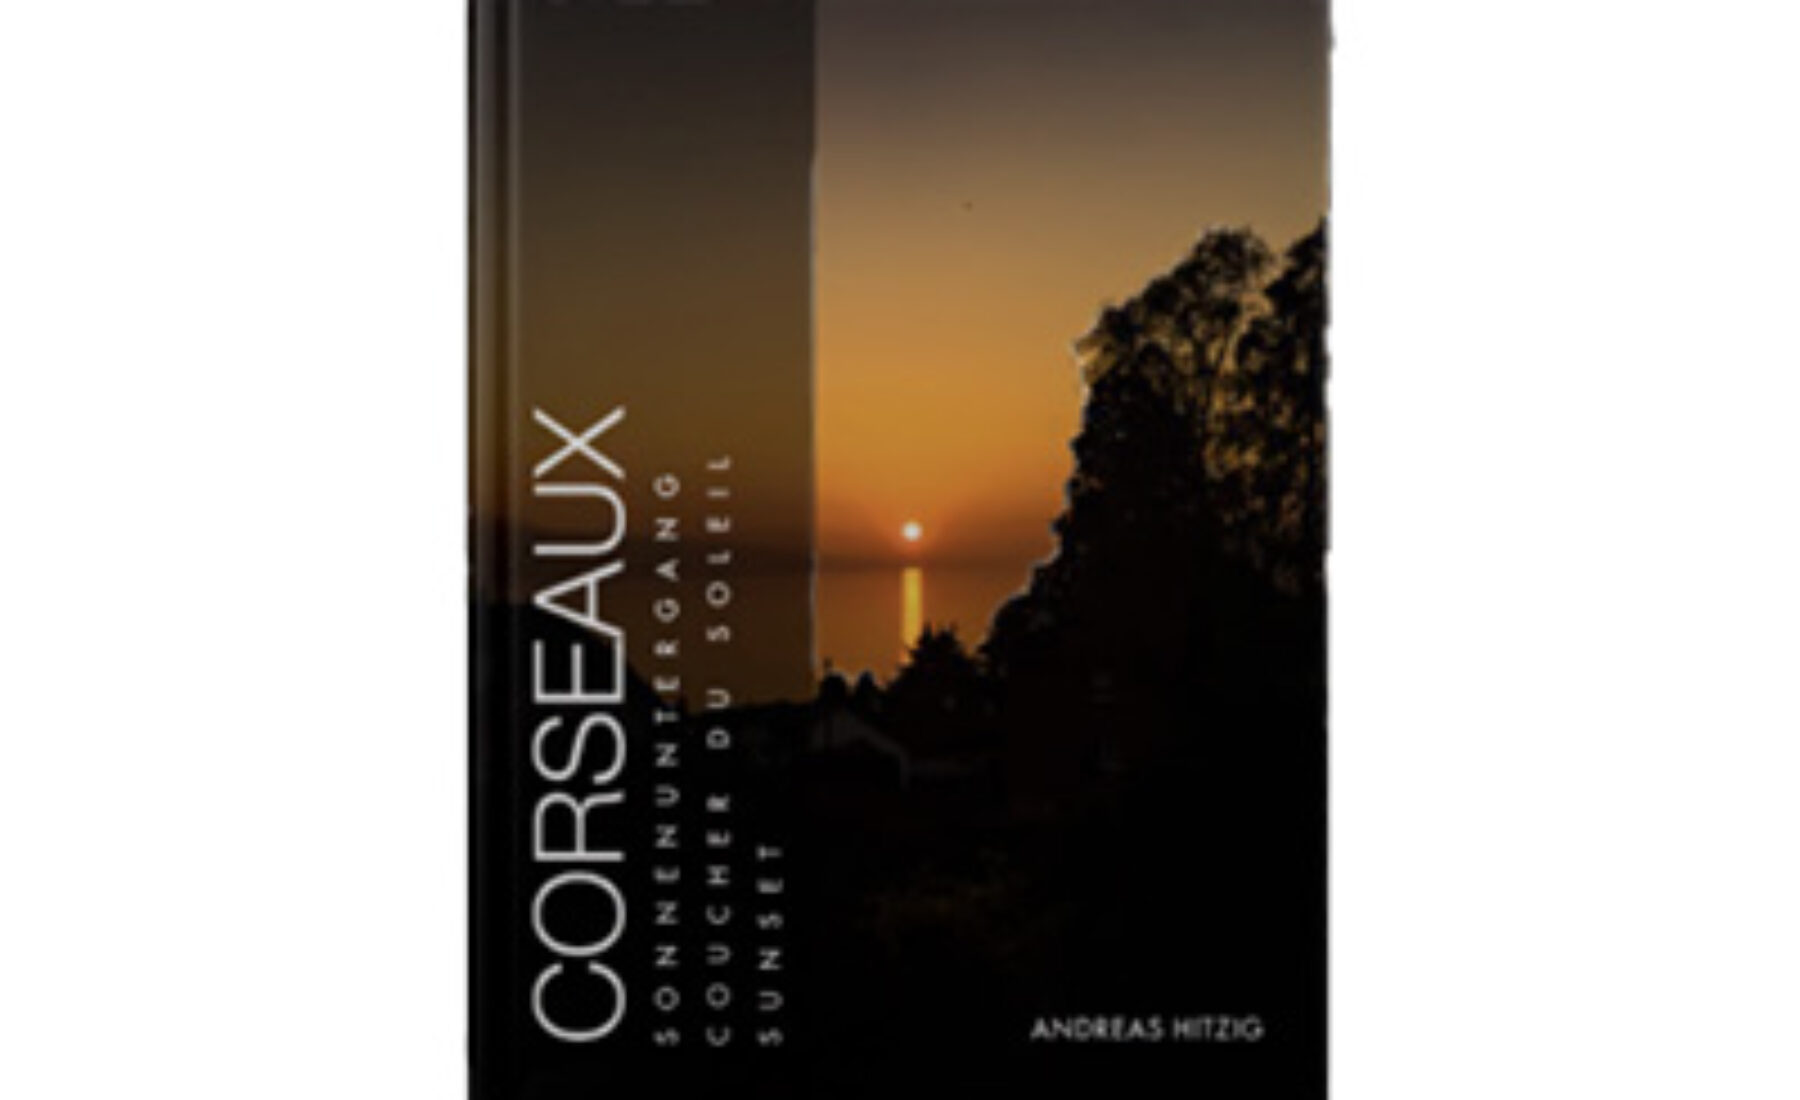 2017-01-01 Update of ebook Corseaux Sunset